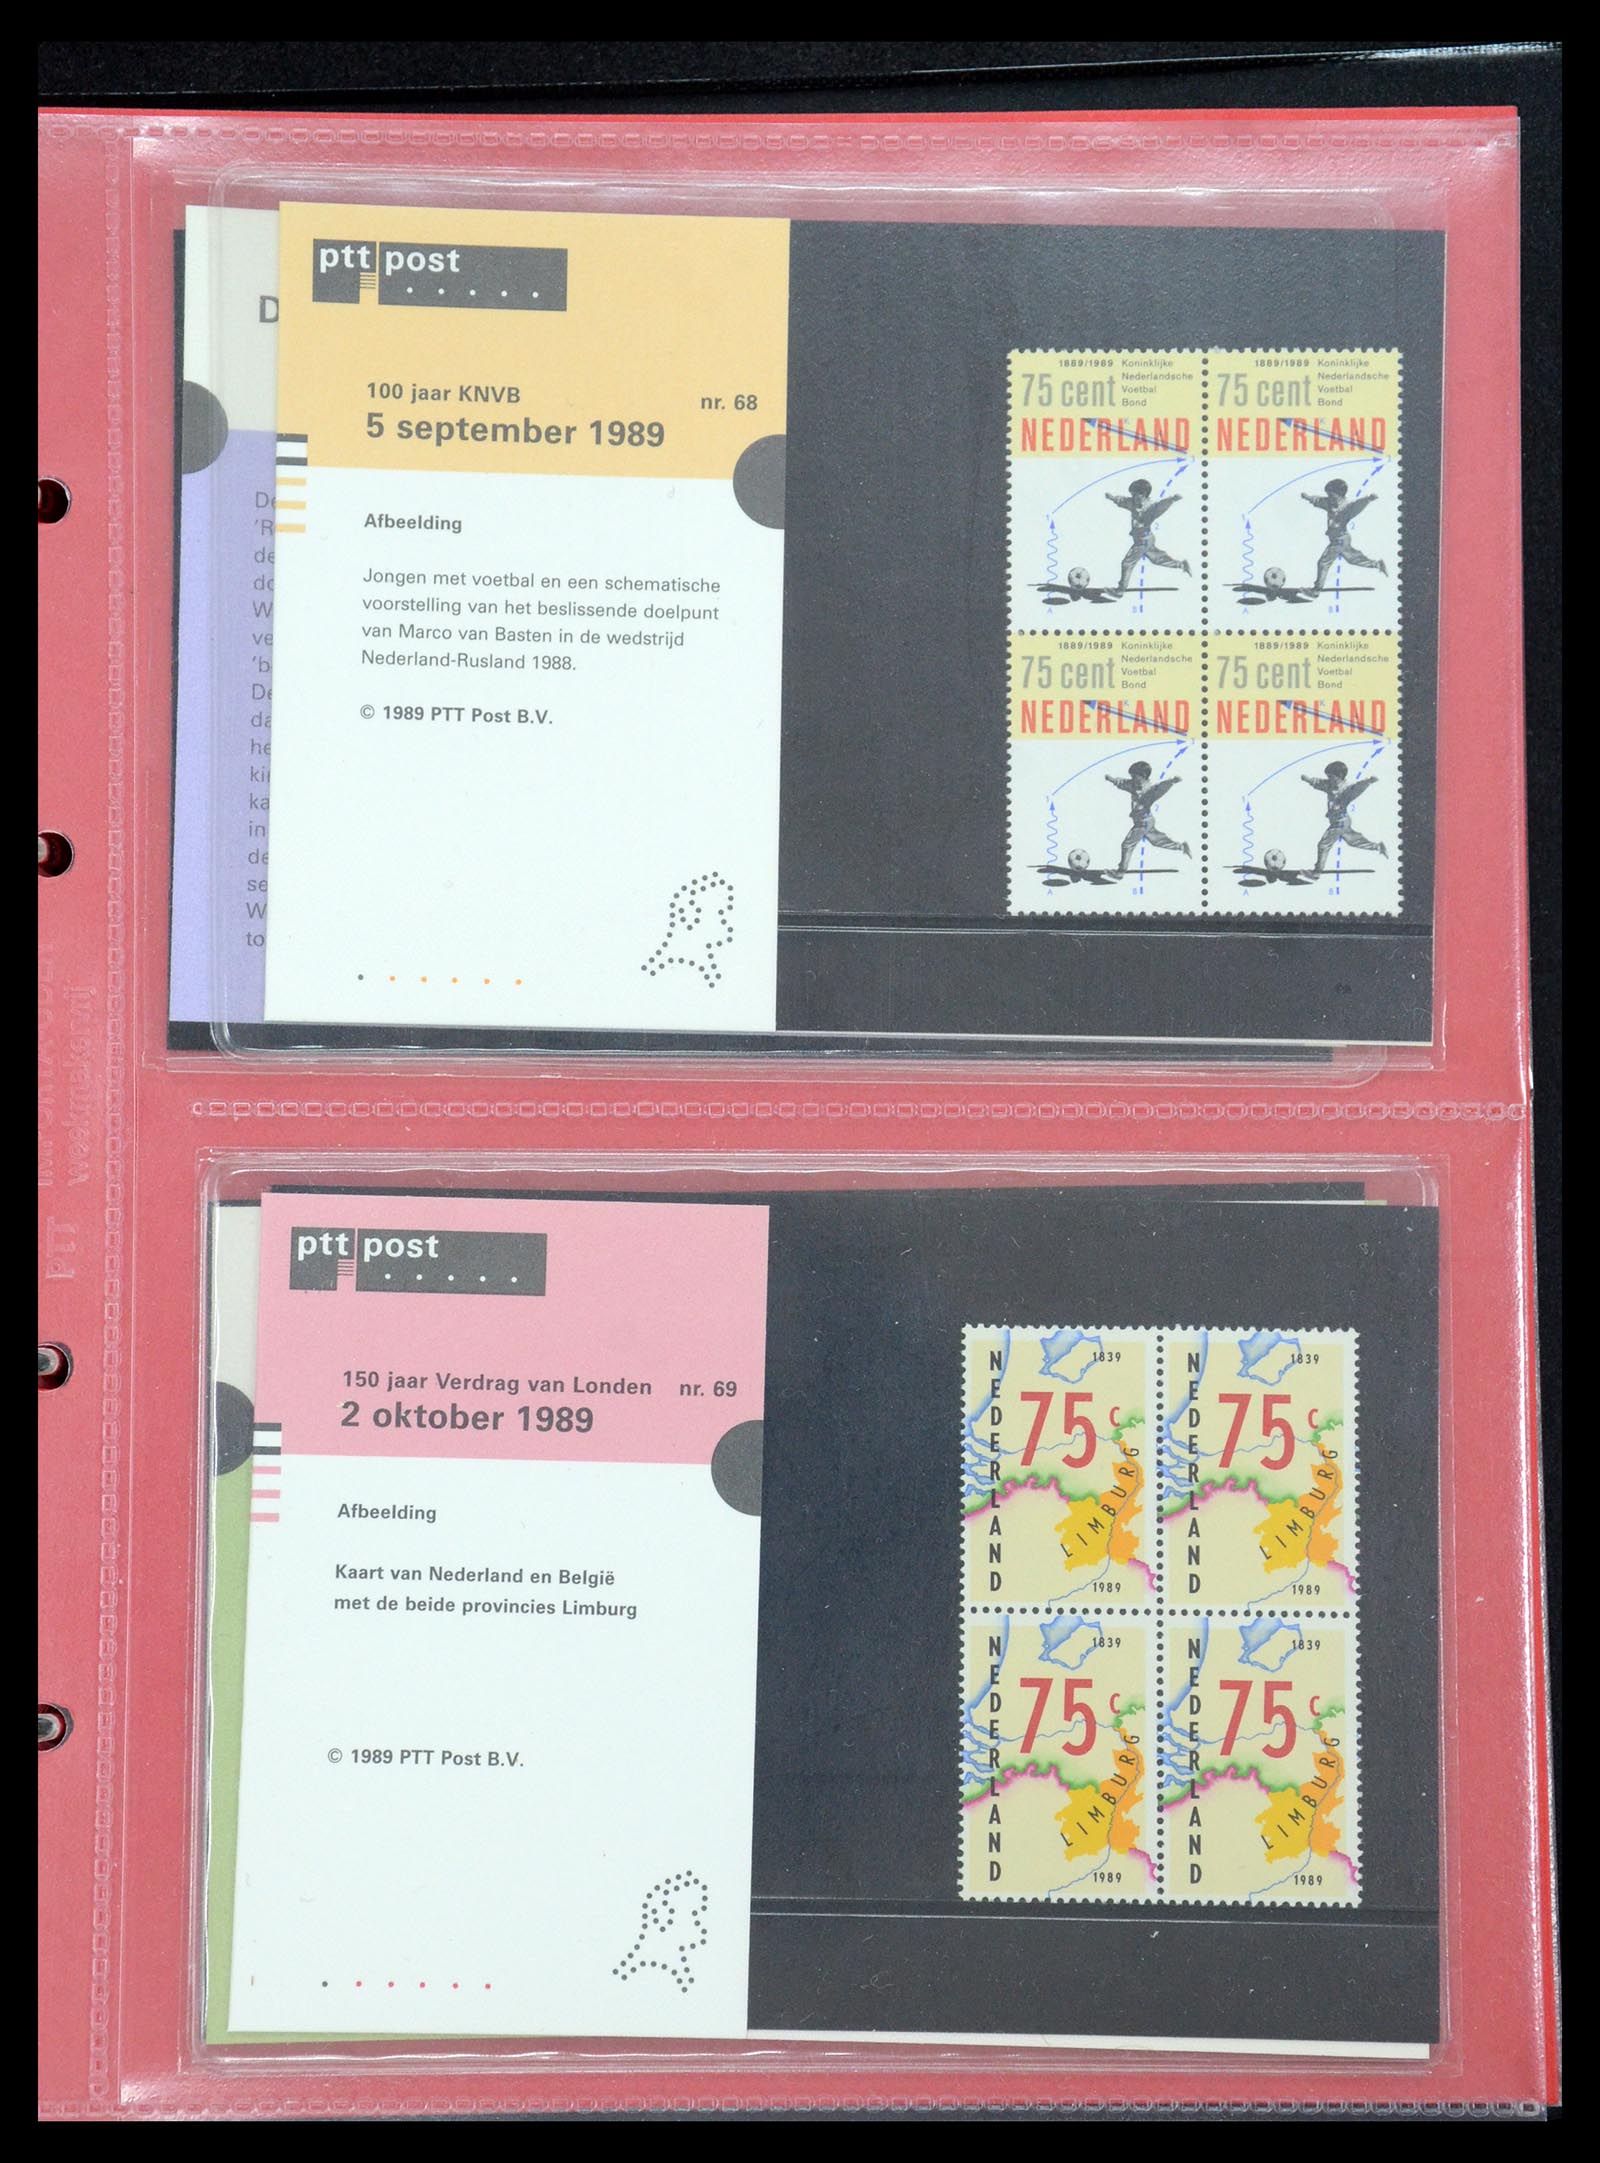 35692 035 - Stamp Collection 35692 Netherlands presentation packs 1982-2021!!